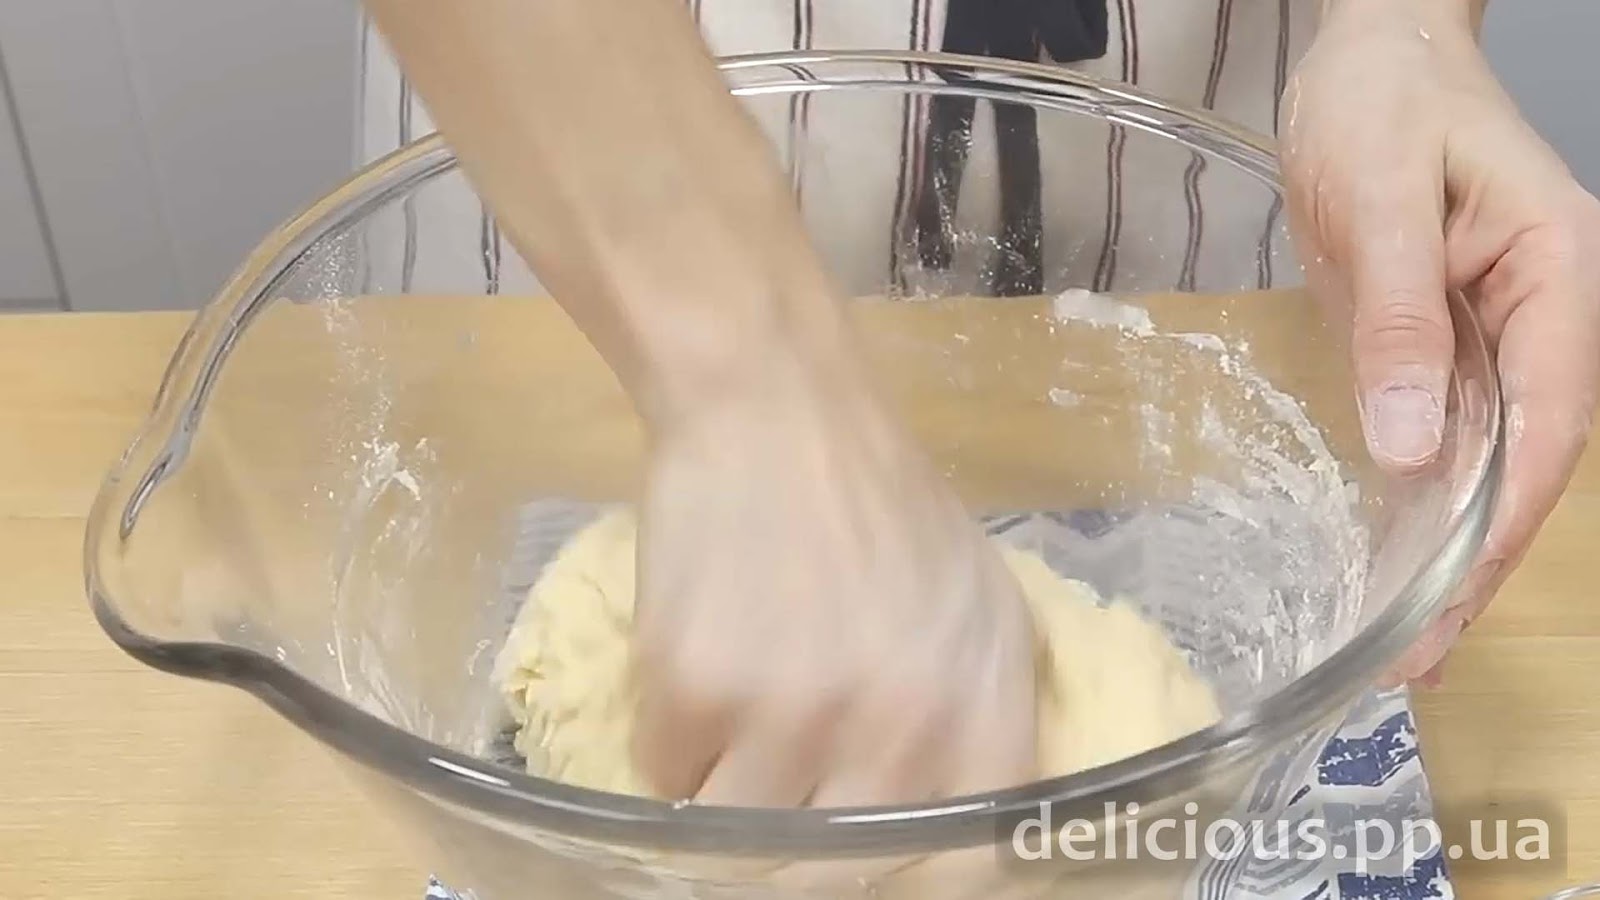 Фото приготовления рецепта: «Как приготовить пирожки. Рецепт пирожков в духовке. Тесто для пирожков к любой начинке.» - шаг №3